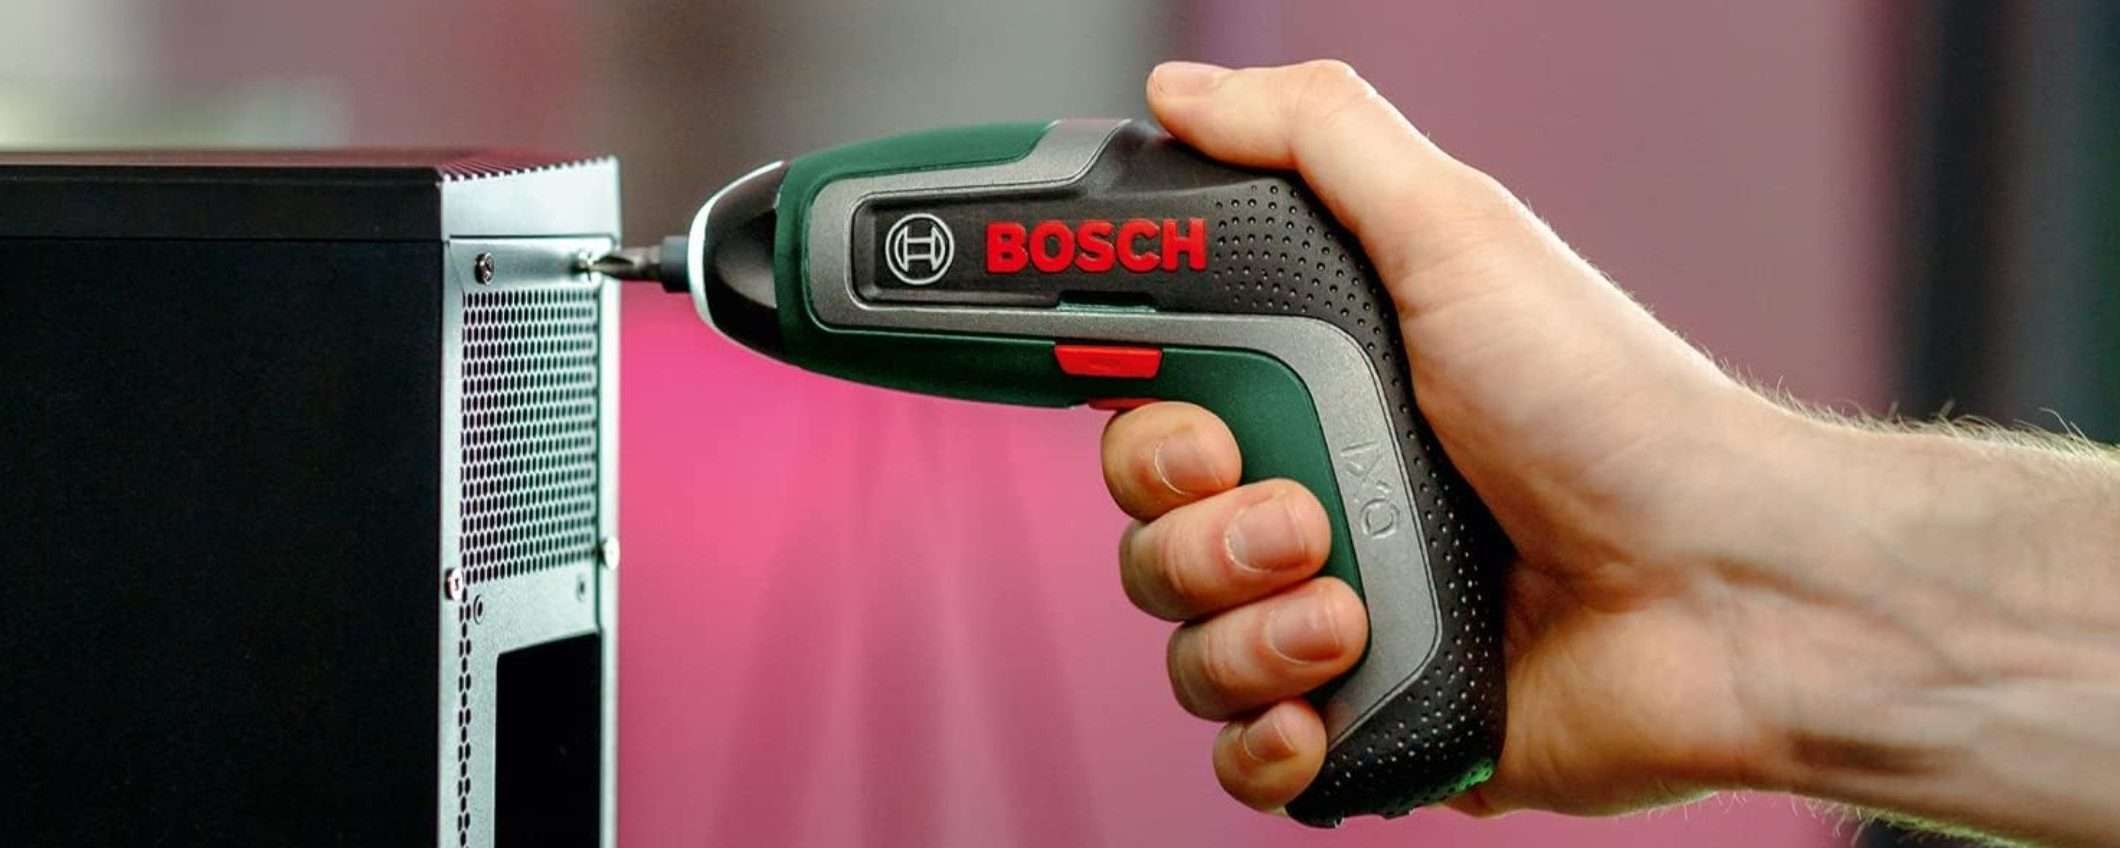 Trapano avvitatore Bosch, accessoriato, a prezzo WOW su Amazon (-16%)